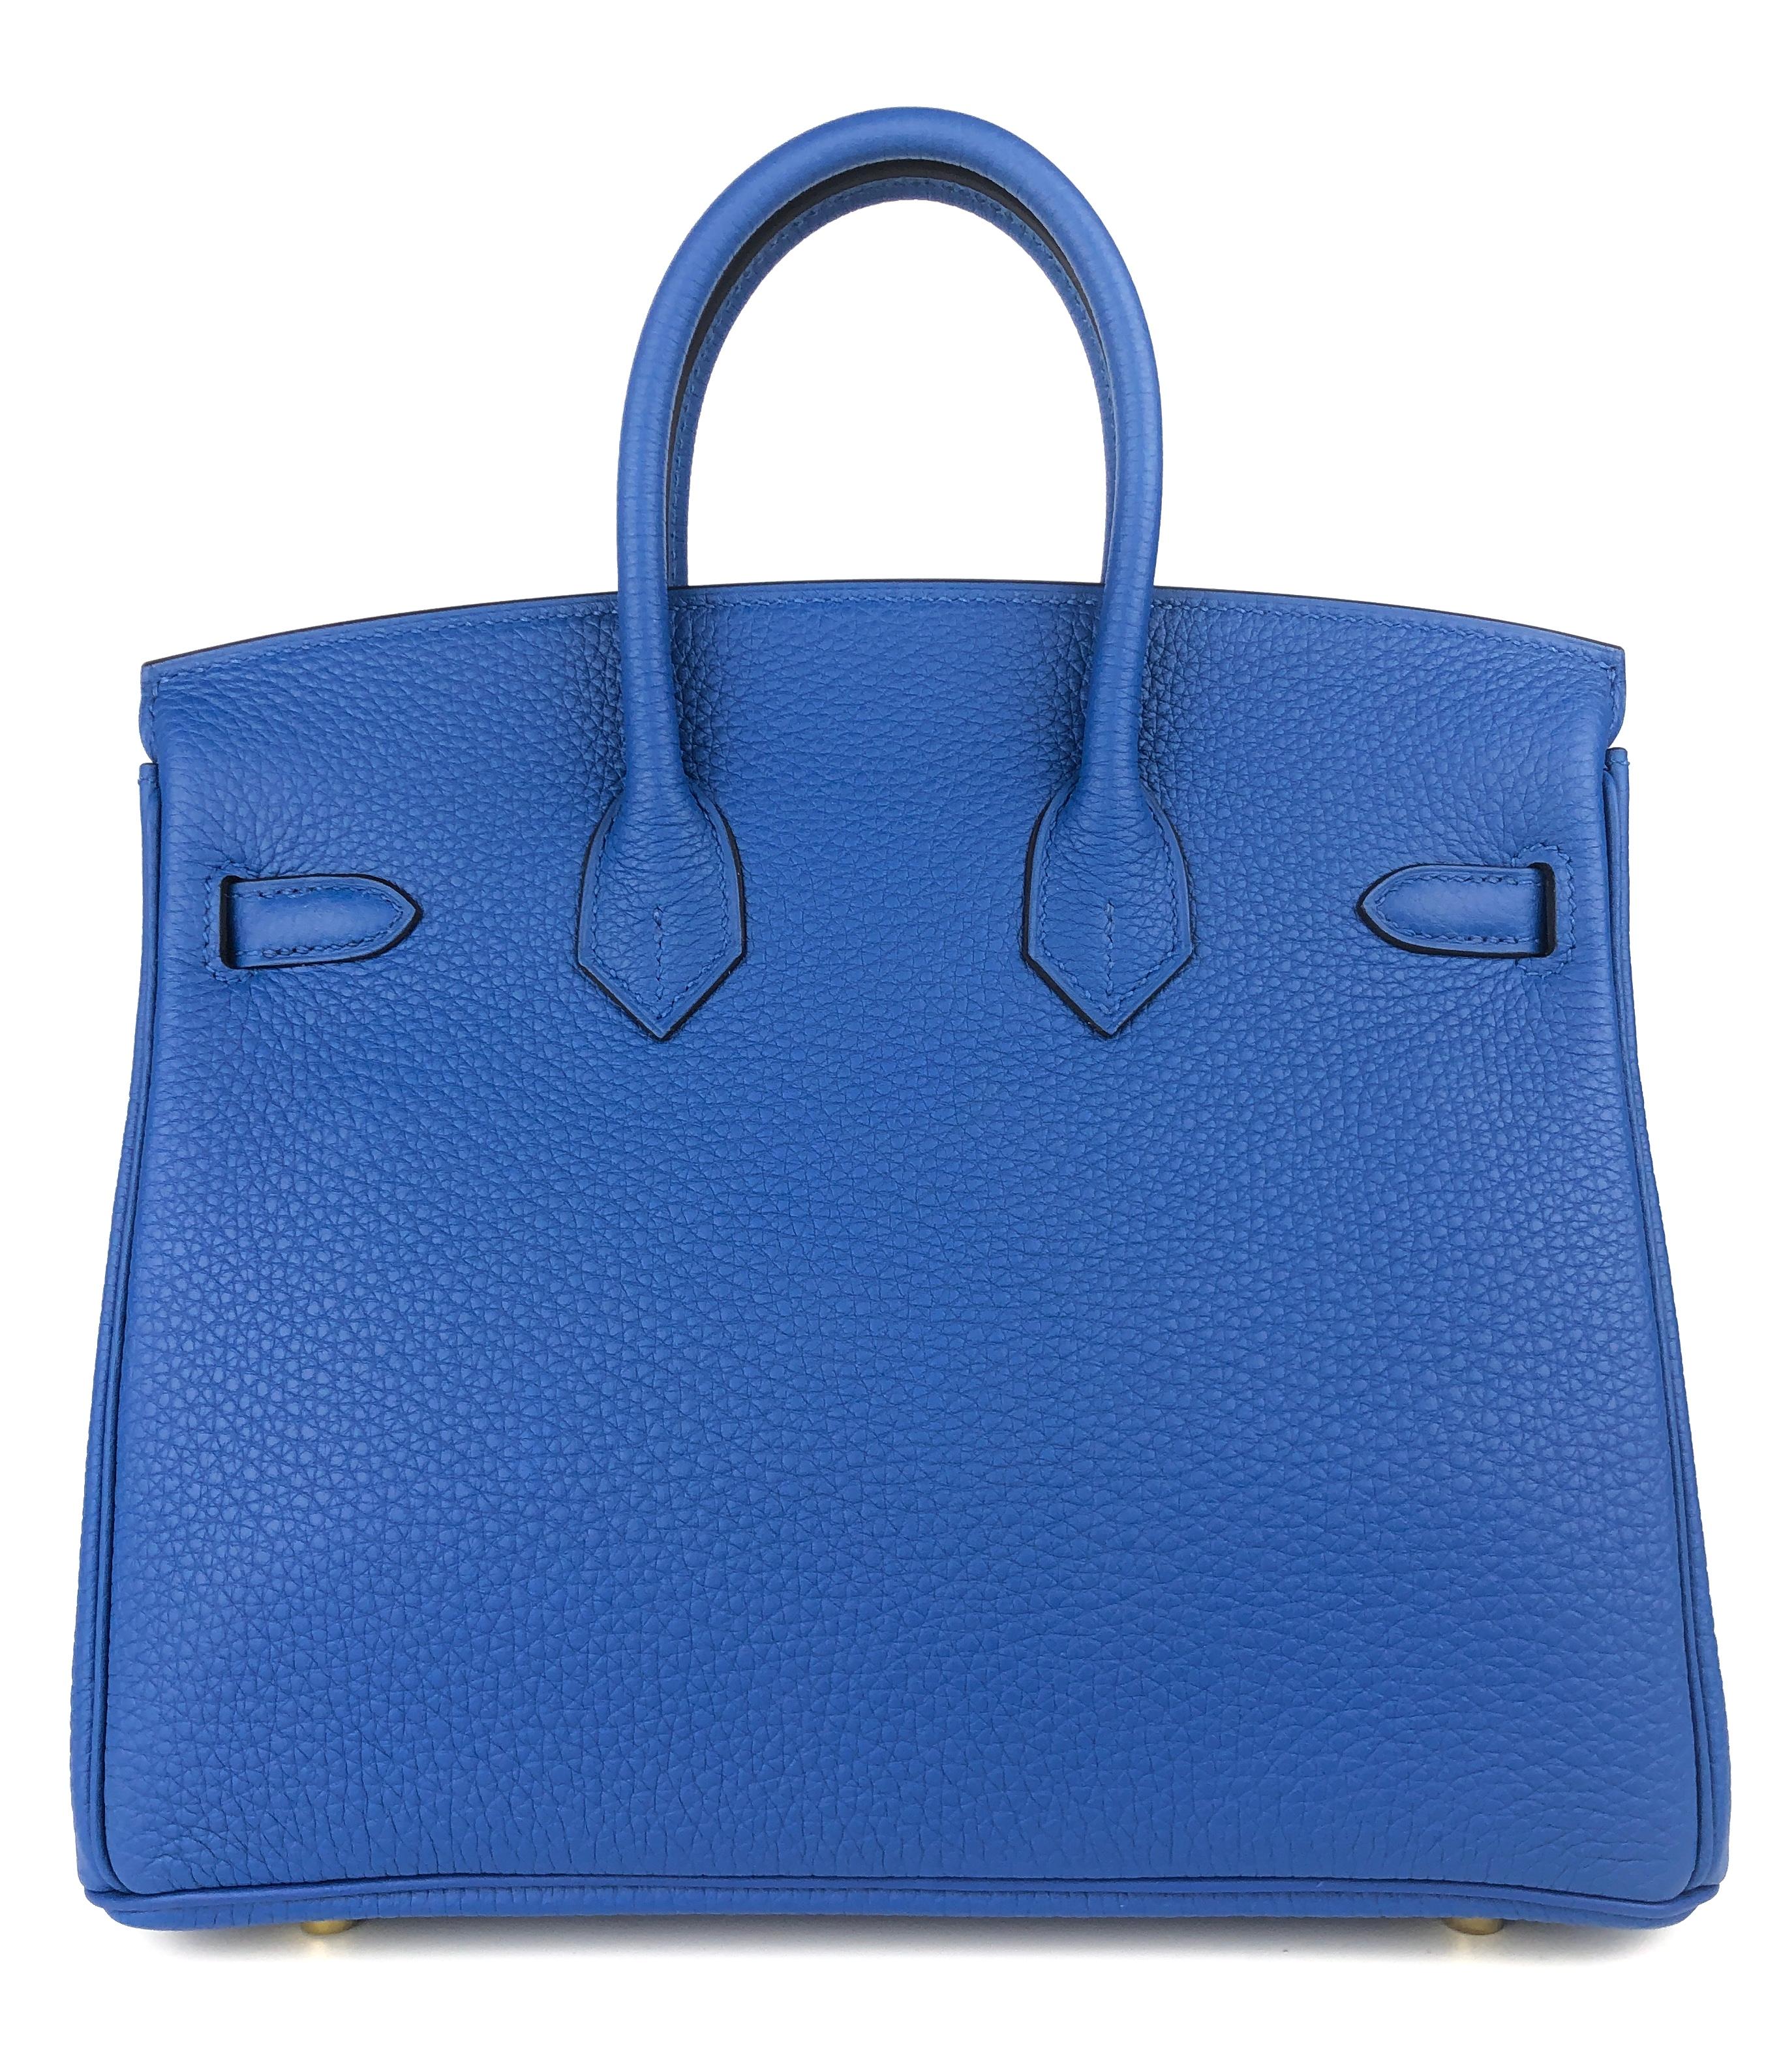 Women's or Men's Hermes Birkin 25 Blue Bleu France Togo Leather Handbag Gold Hardware 2022